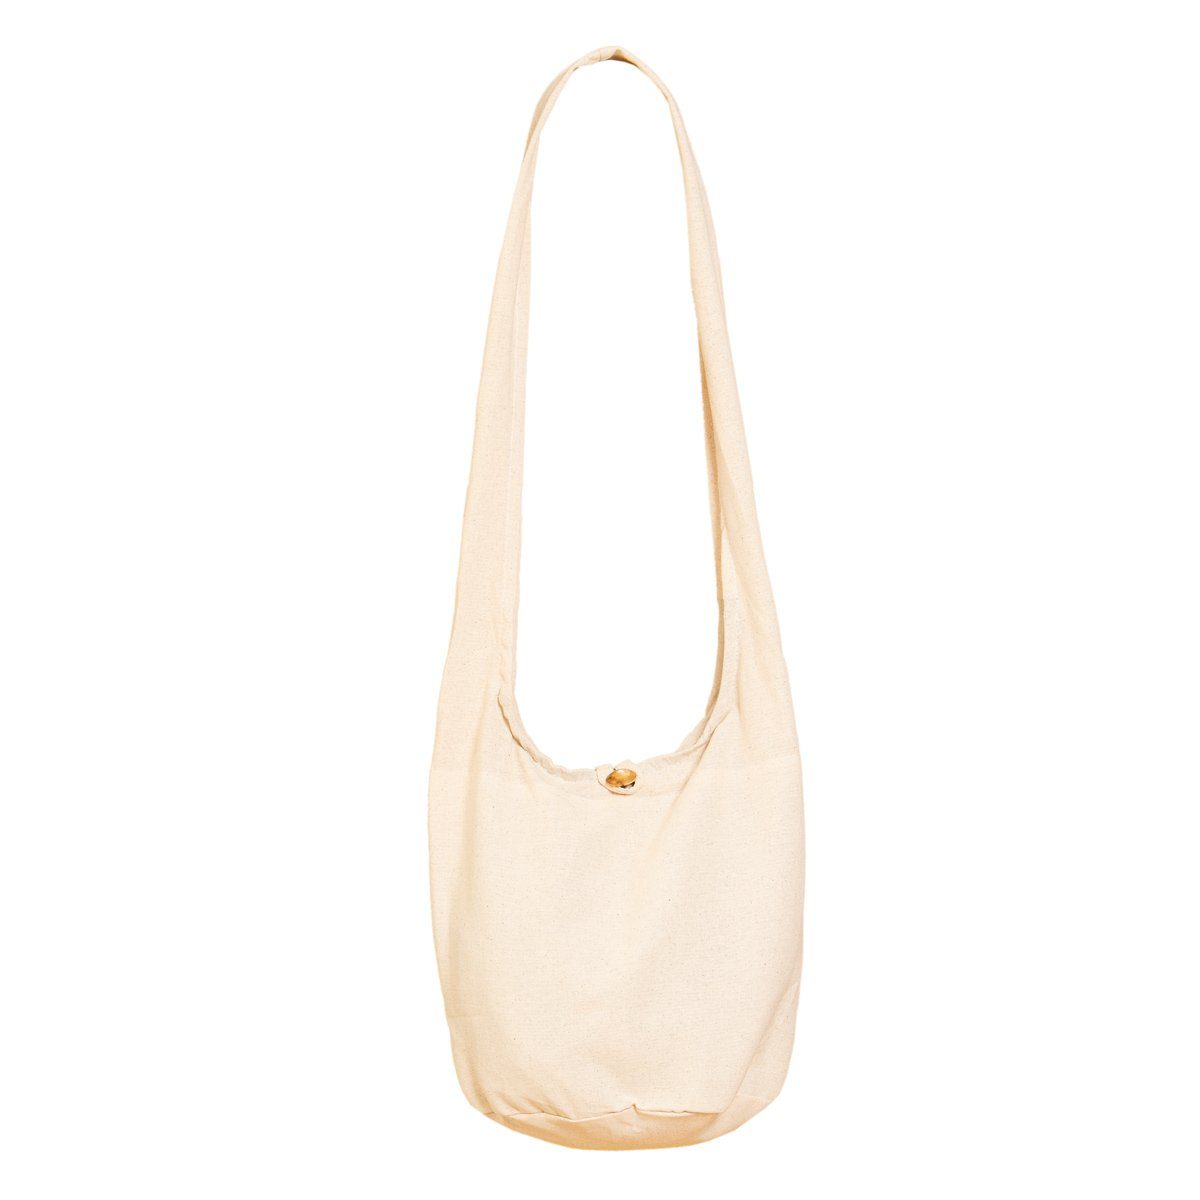 PANASIAM Beuteltasche Schulterbeutel einfarbig Schultertasche aus 100% Baumwolle in 2 Größen, Umhängetasche auch als Wickeltasche Handtasche oder Strandtasche Natural